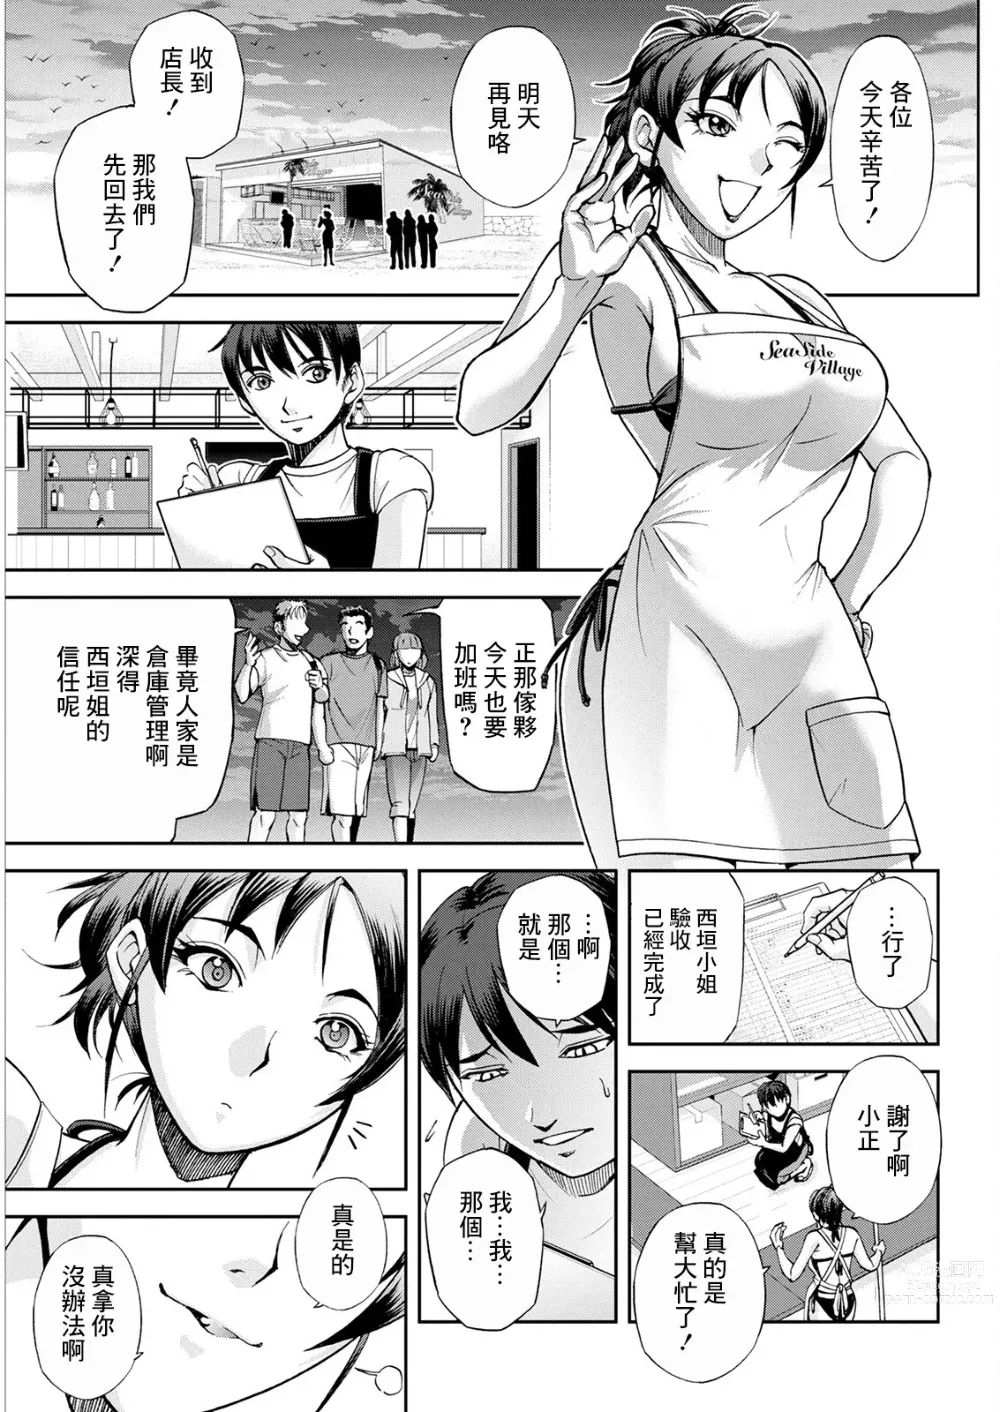 Page 1 of manga Umi no Ie no Nishigaki-san Kouhen